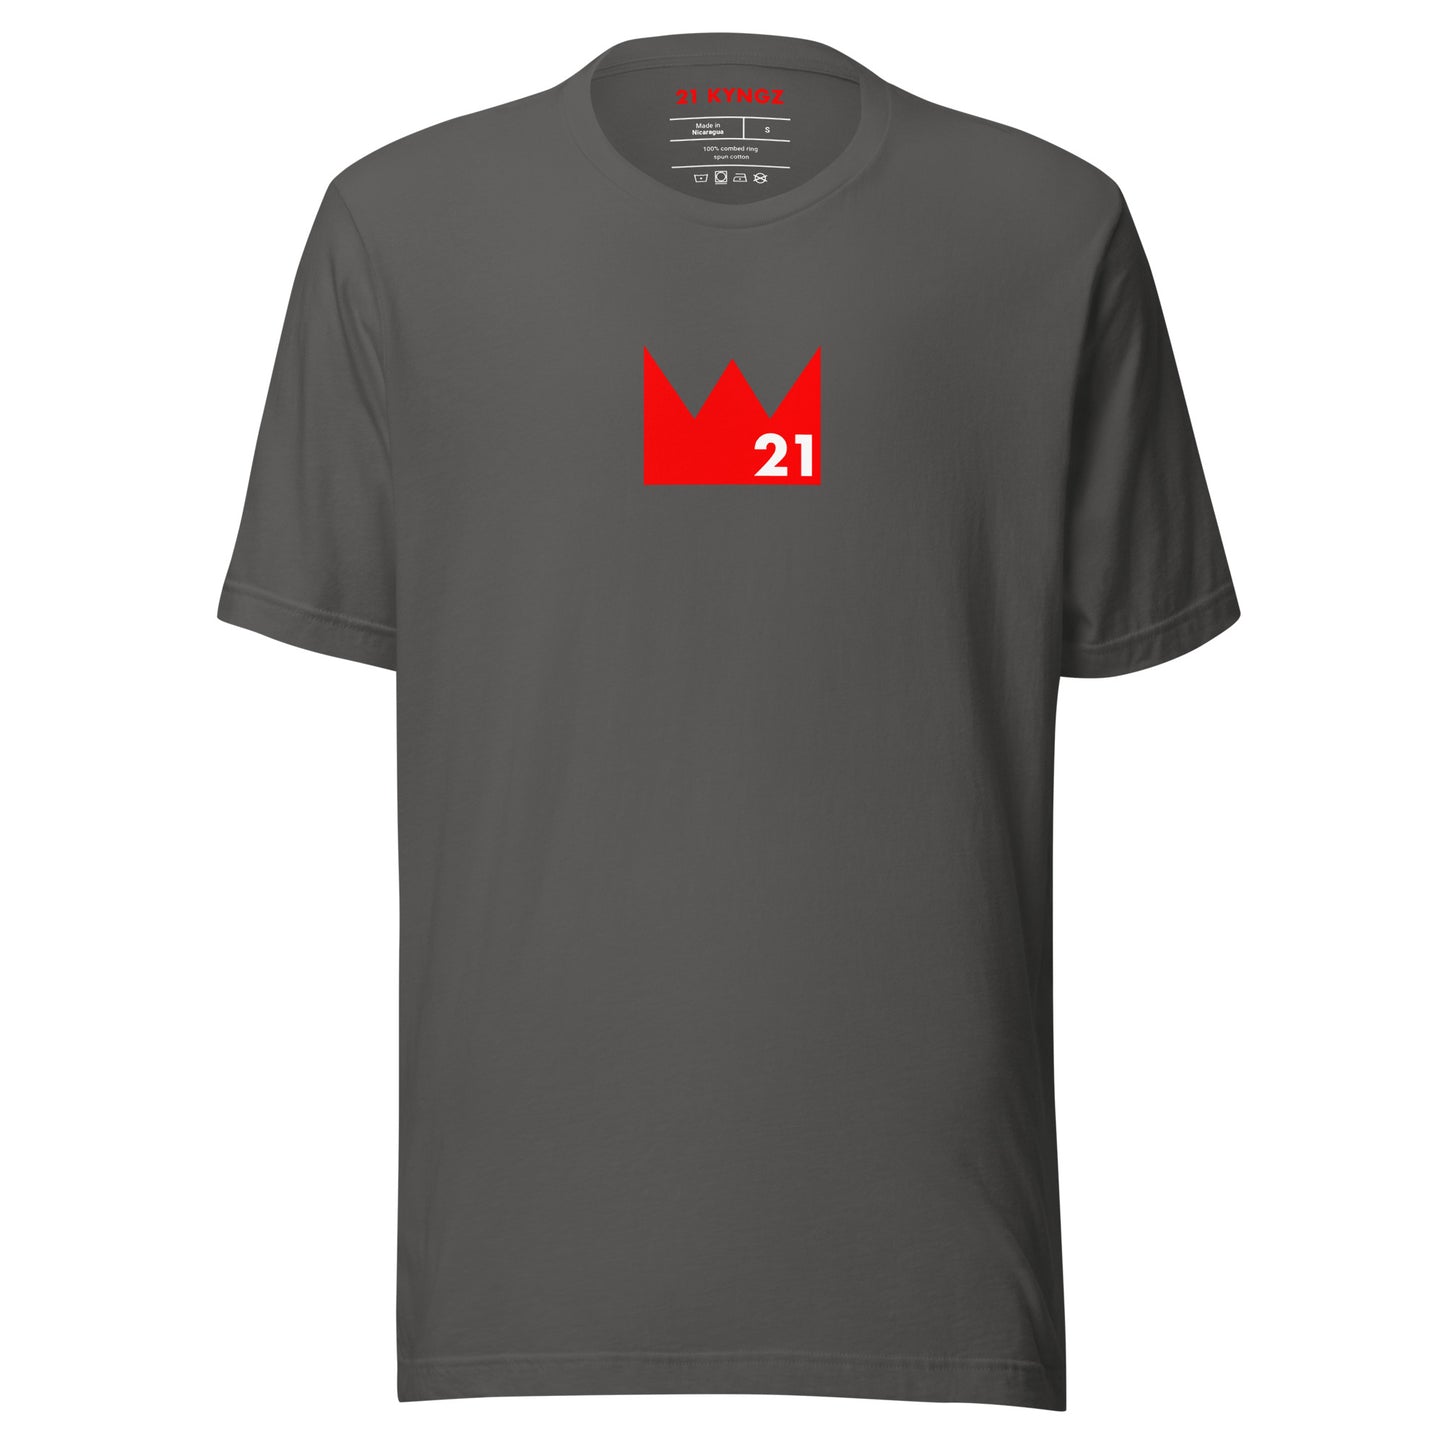 Crown 21 (R) T-shirt